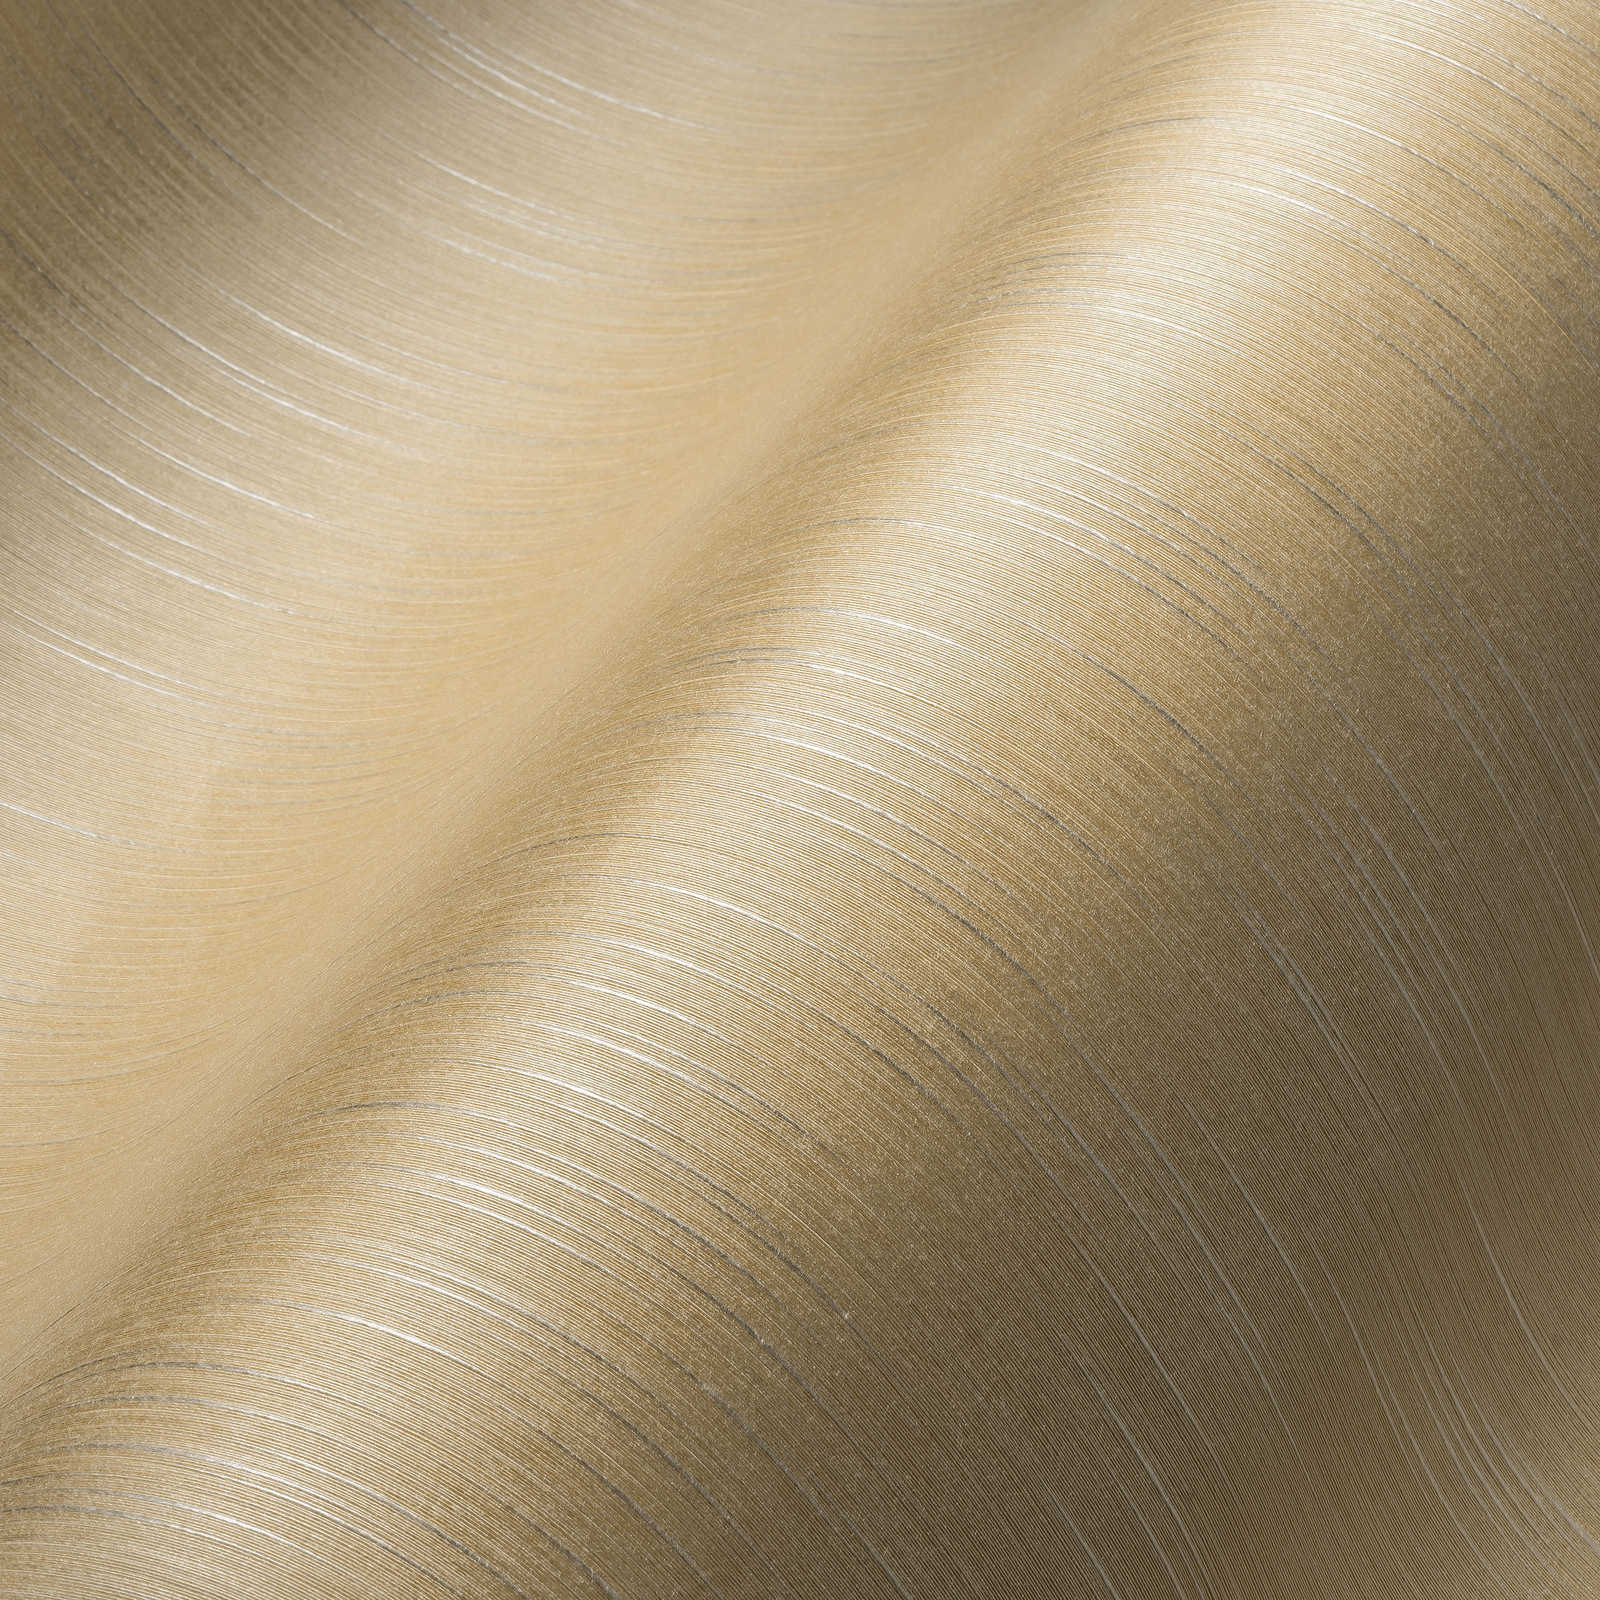             Carta da parati non tessuta a tinta unita color crema con effetto metallizzato e struttura tessile
        